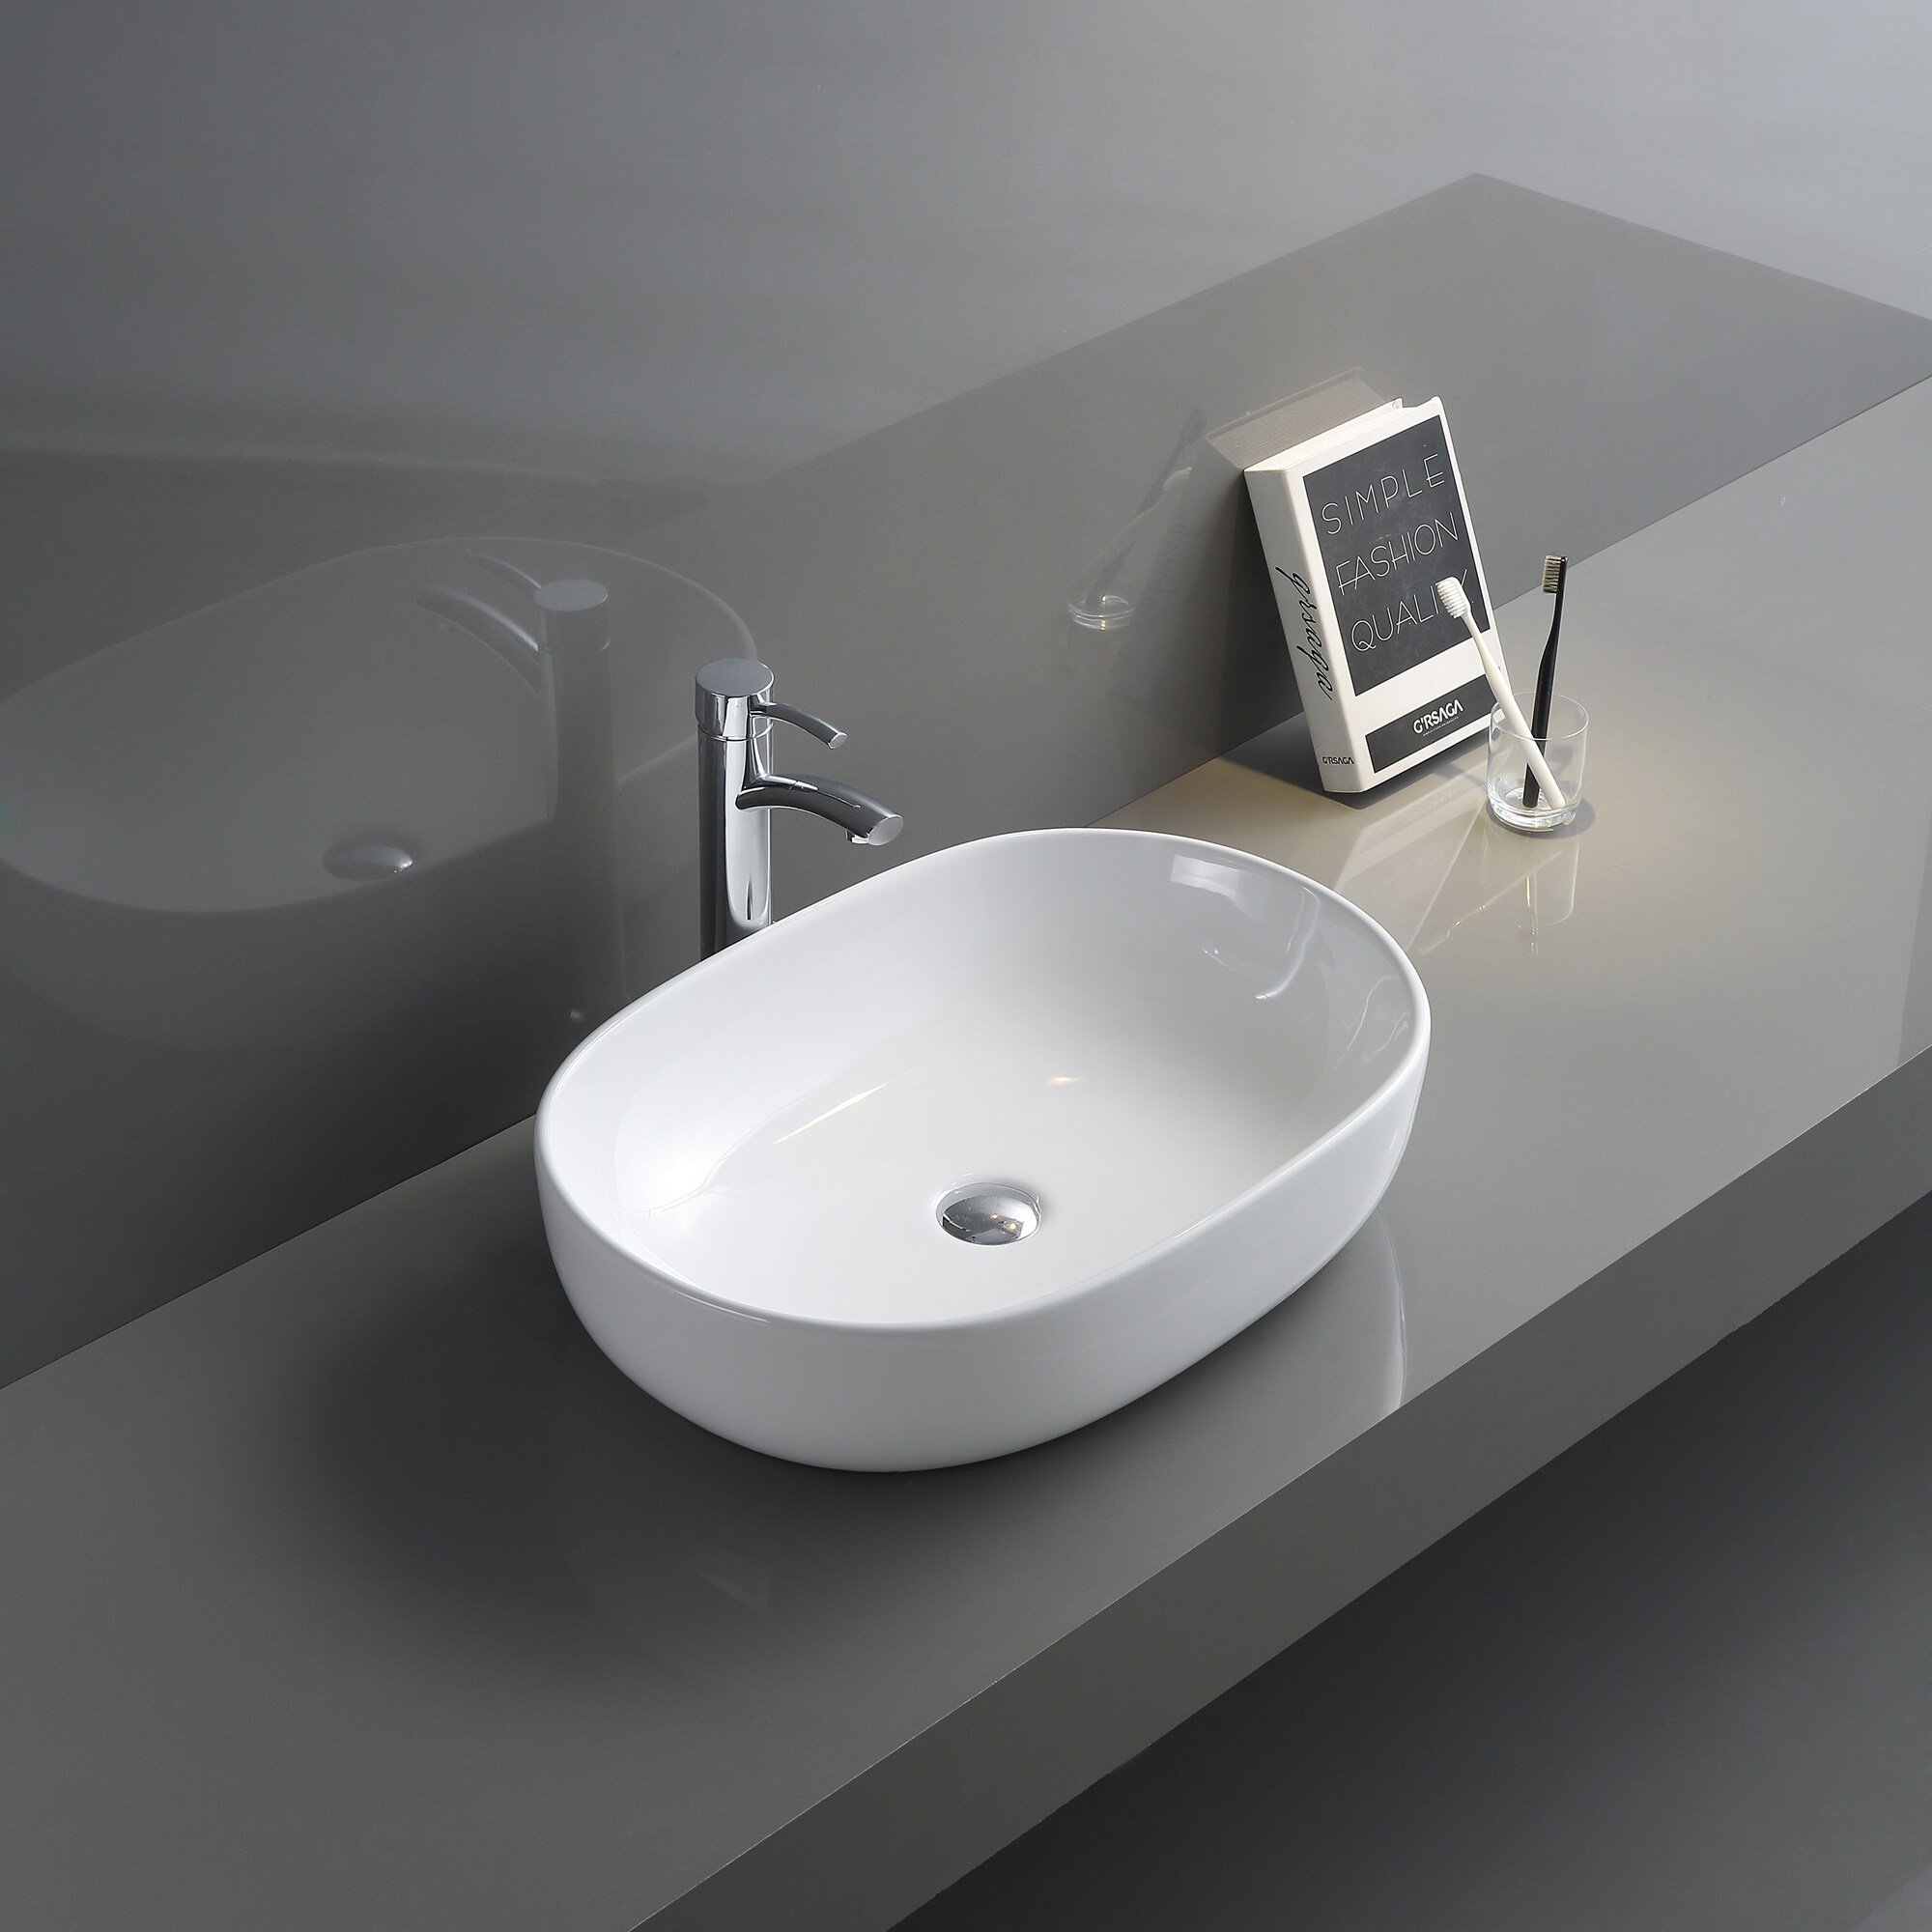 Ruvati Vista White Ceramic Vessel Oval Modern Bathroom Sink (23.5-in x 16.5-in)